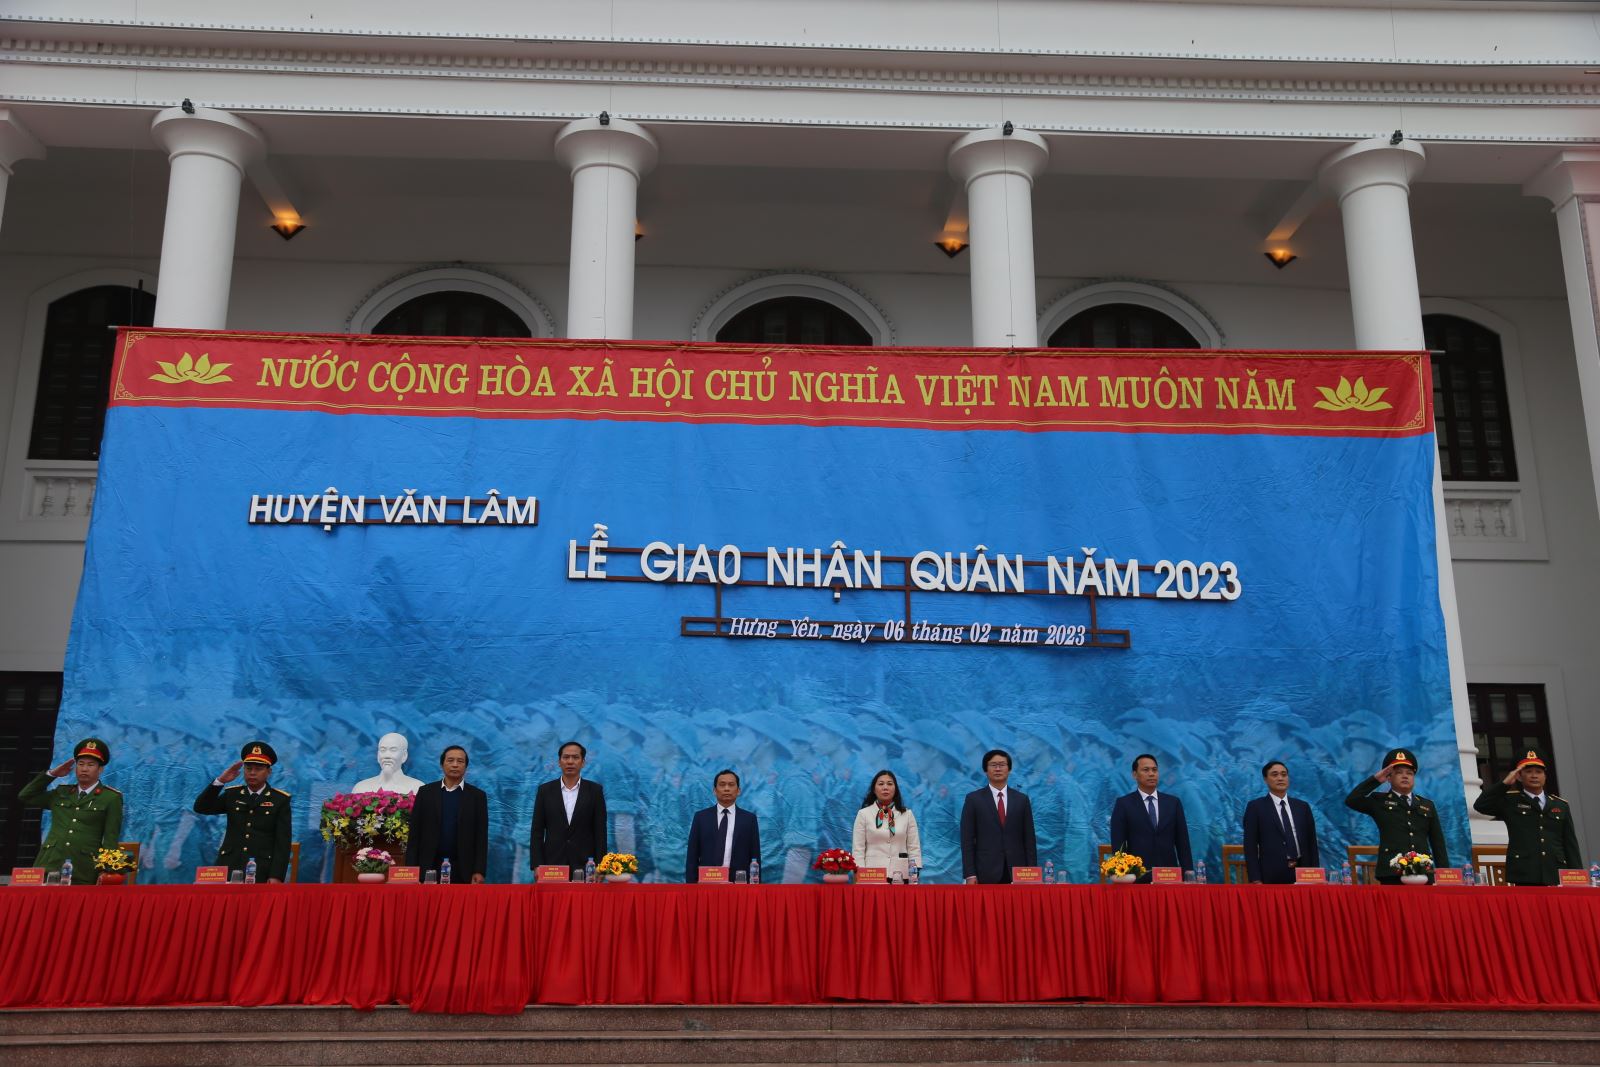 Văn Lâm tổ chức Lễ giao nhận quân năm 2023